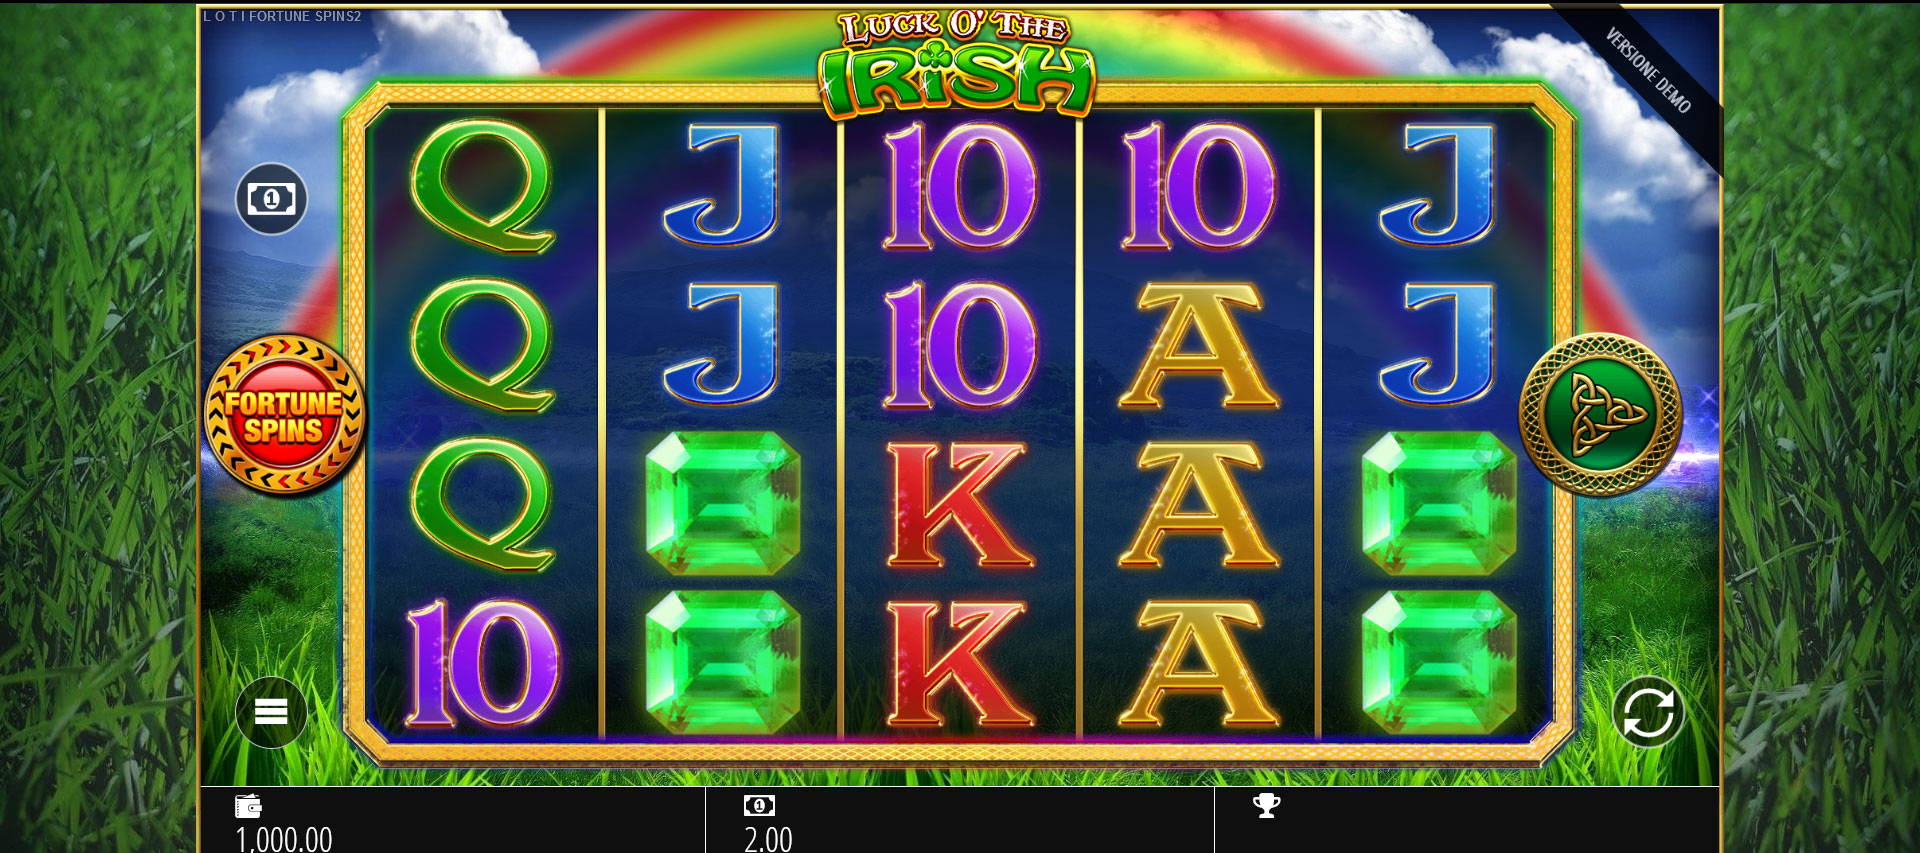 griglia di gioco della slot online Luck O’ the Irish Fortune Spins 2